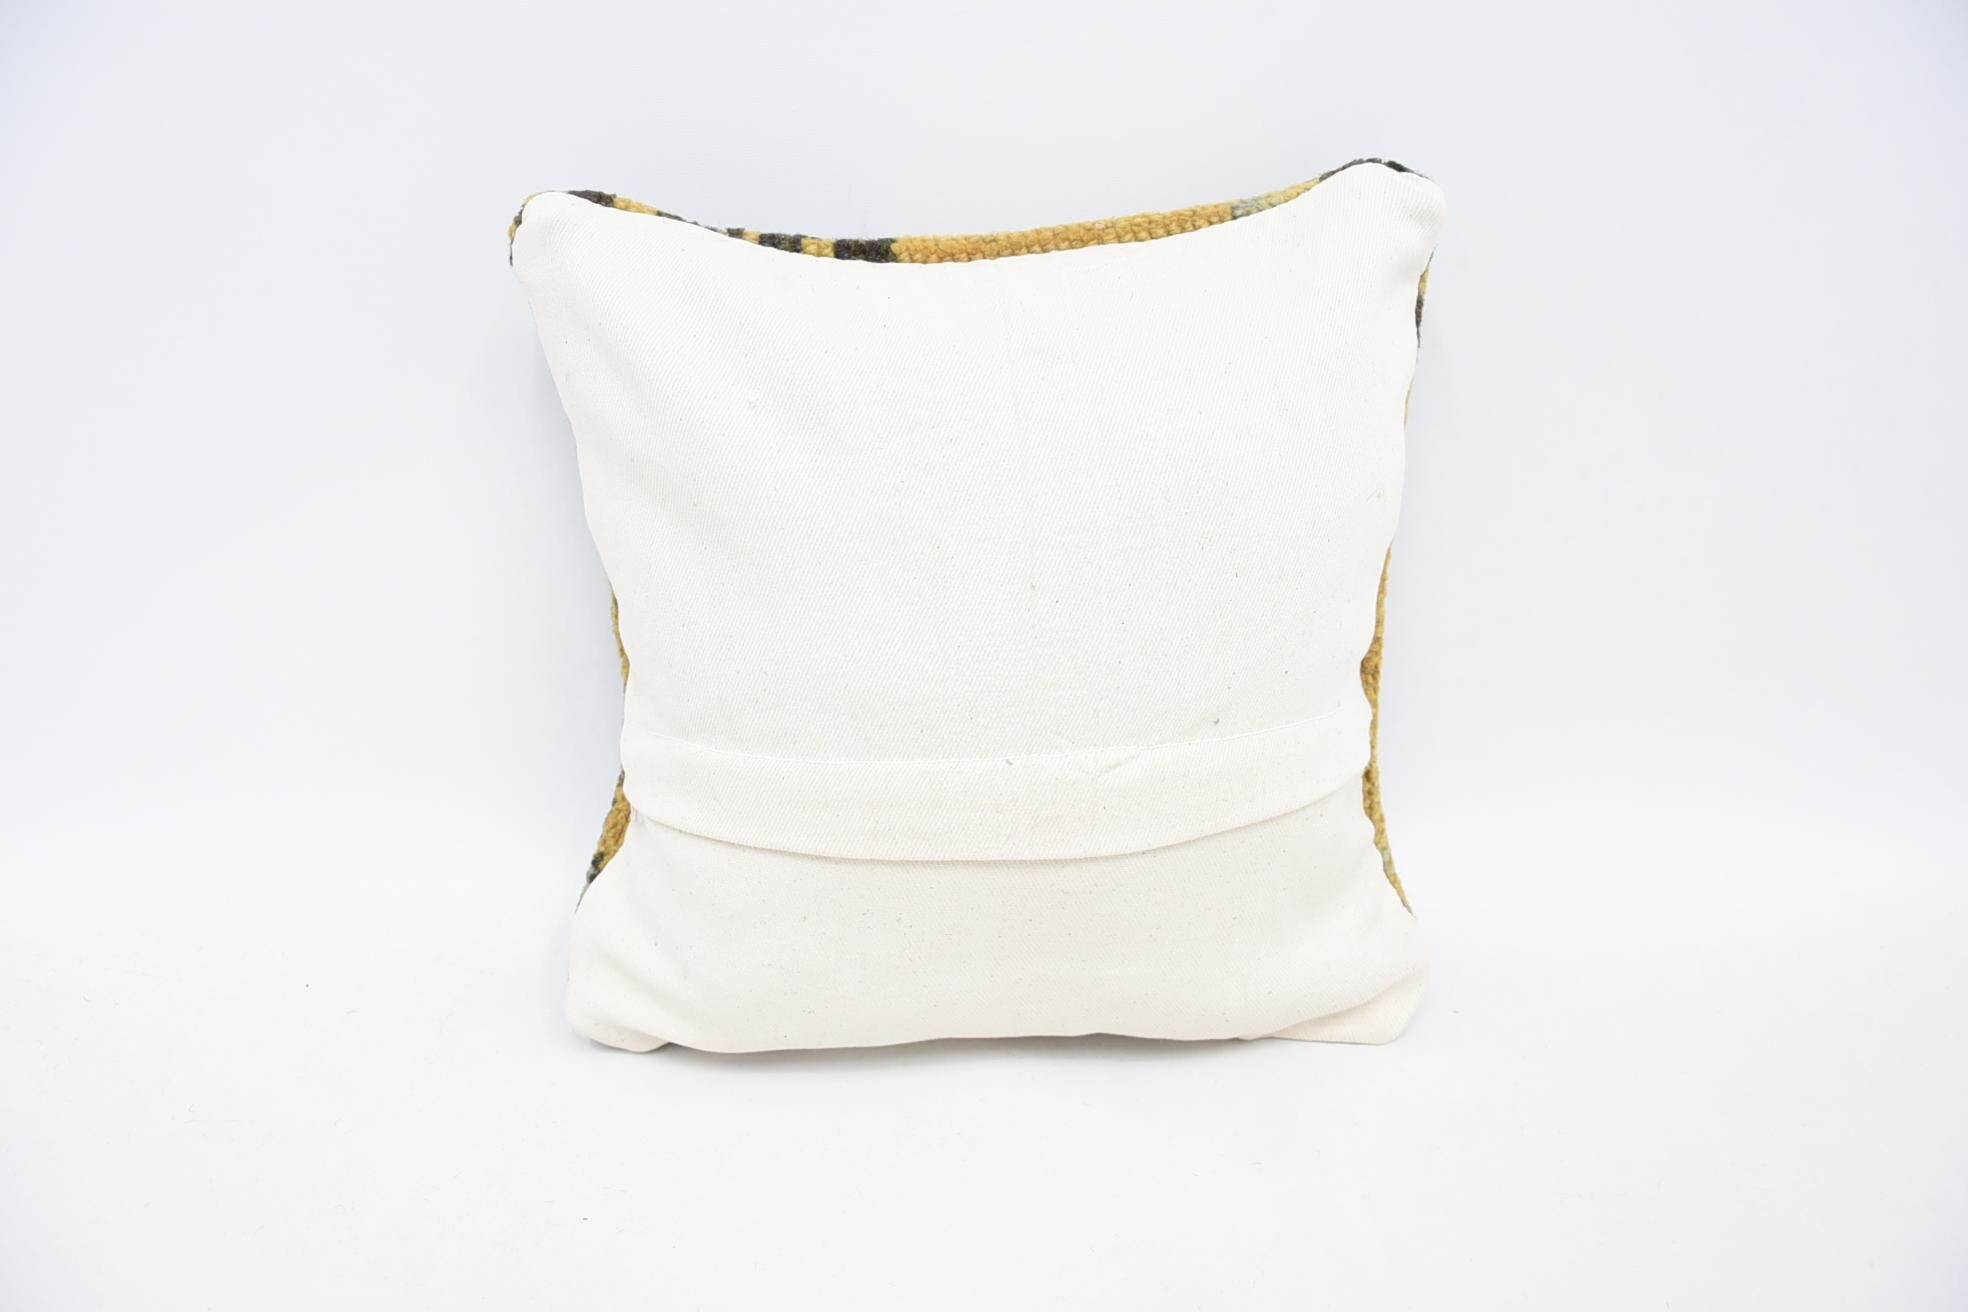 Kilim Cushion Sham, Ethnical Kilim Rug Pillow, Kilim Pillow Cover, 12"x12" Yellow Cushion Cover, Vintage Pillow, Car Cushion Cover